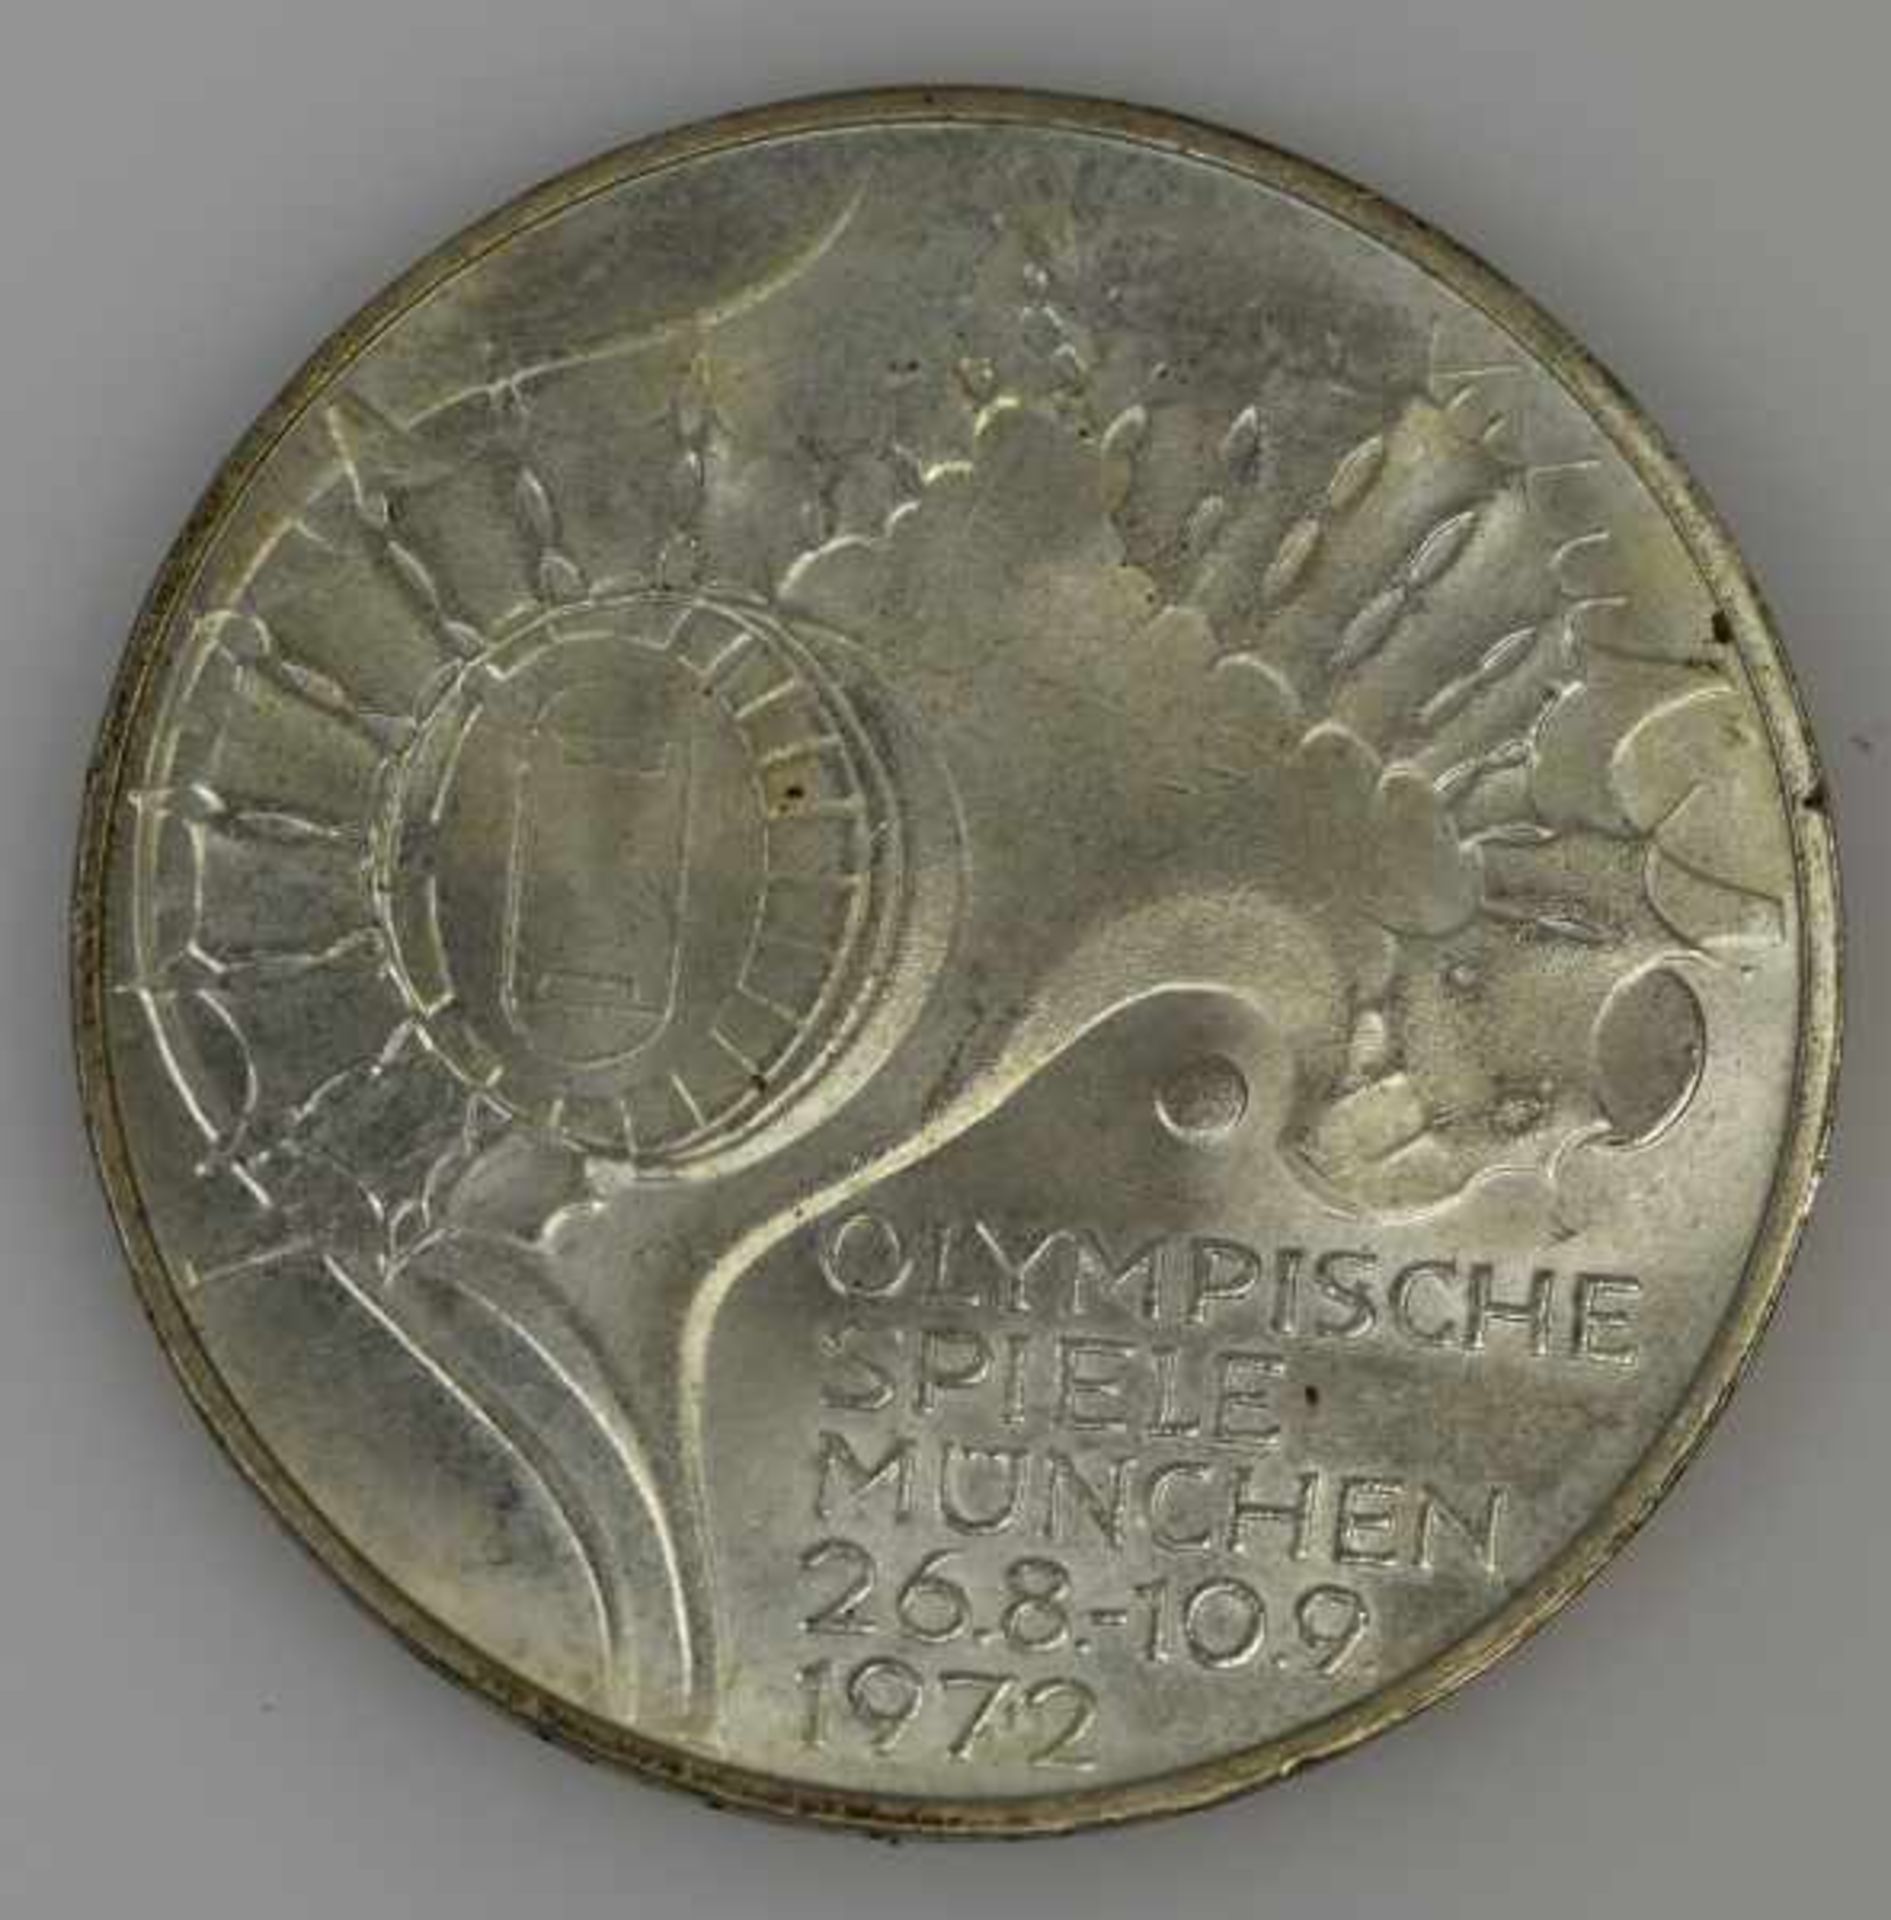 MÜNZEN-LOT 1 Münzanhänger mit Münze 10Fr. Schweiz Nachprägung in Fassung 14ct, 8,3g -1 Goldmünze 200 - Bild 11 aus 17